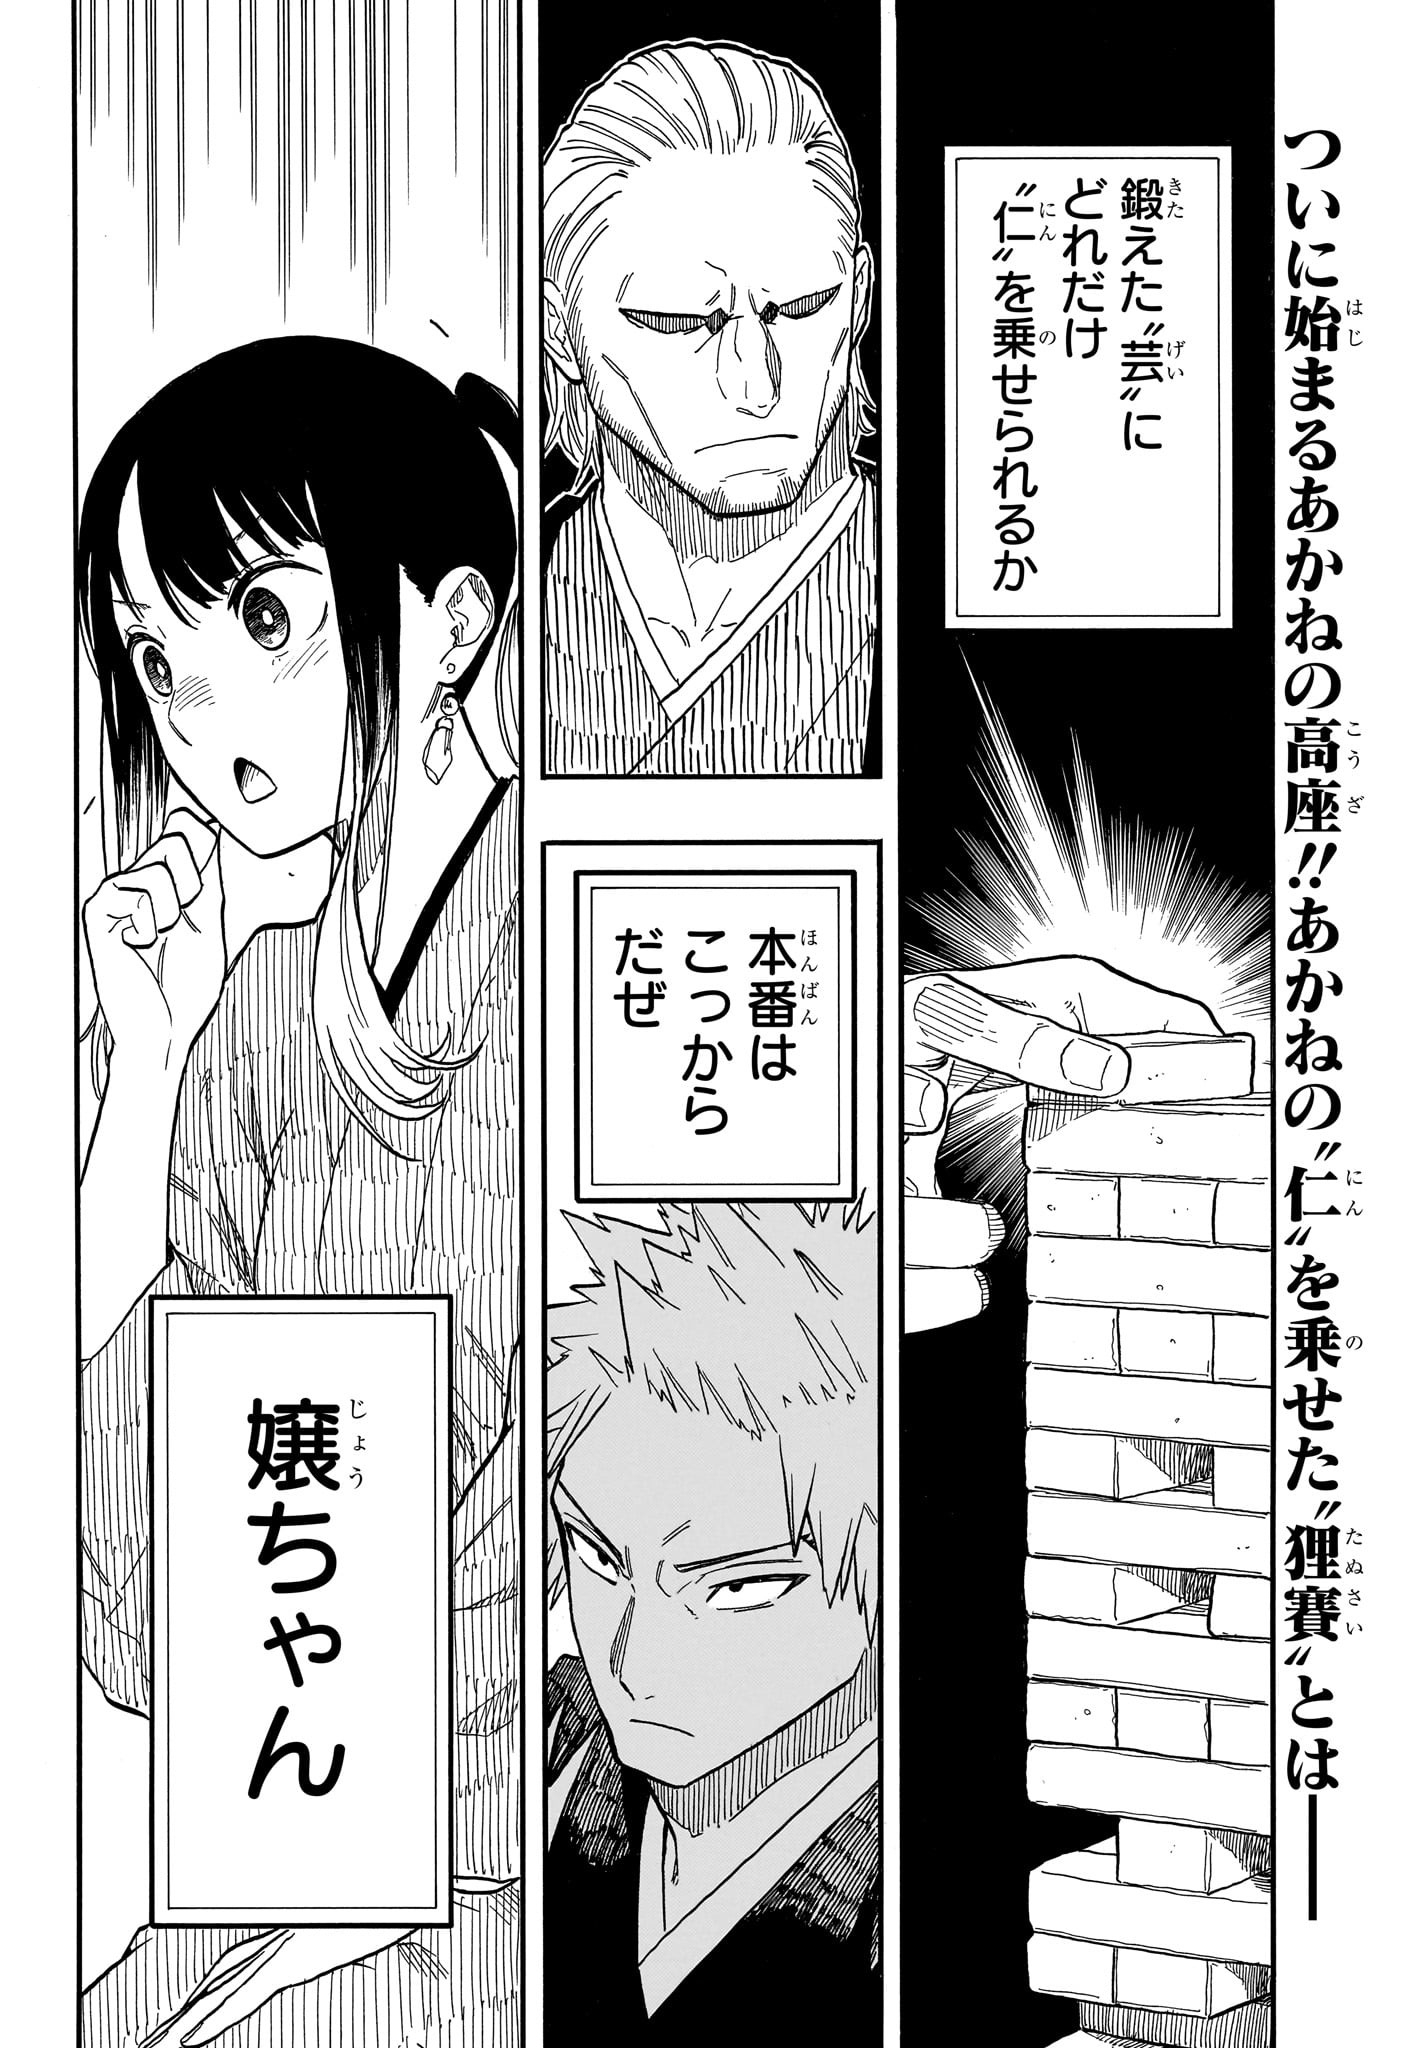 Akane-Banashi - Chapter 98 - Page 2